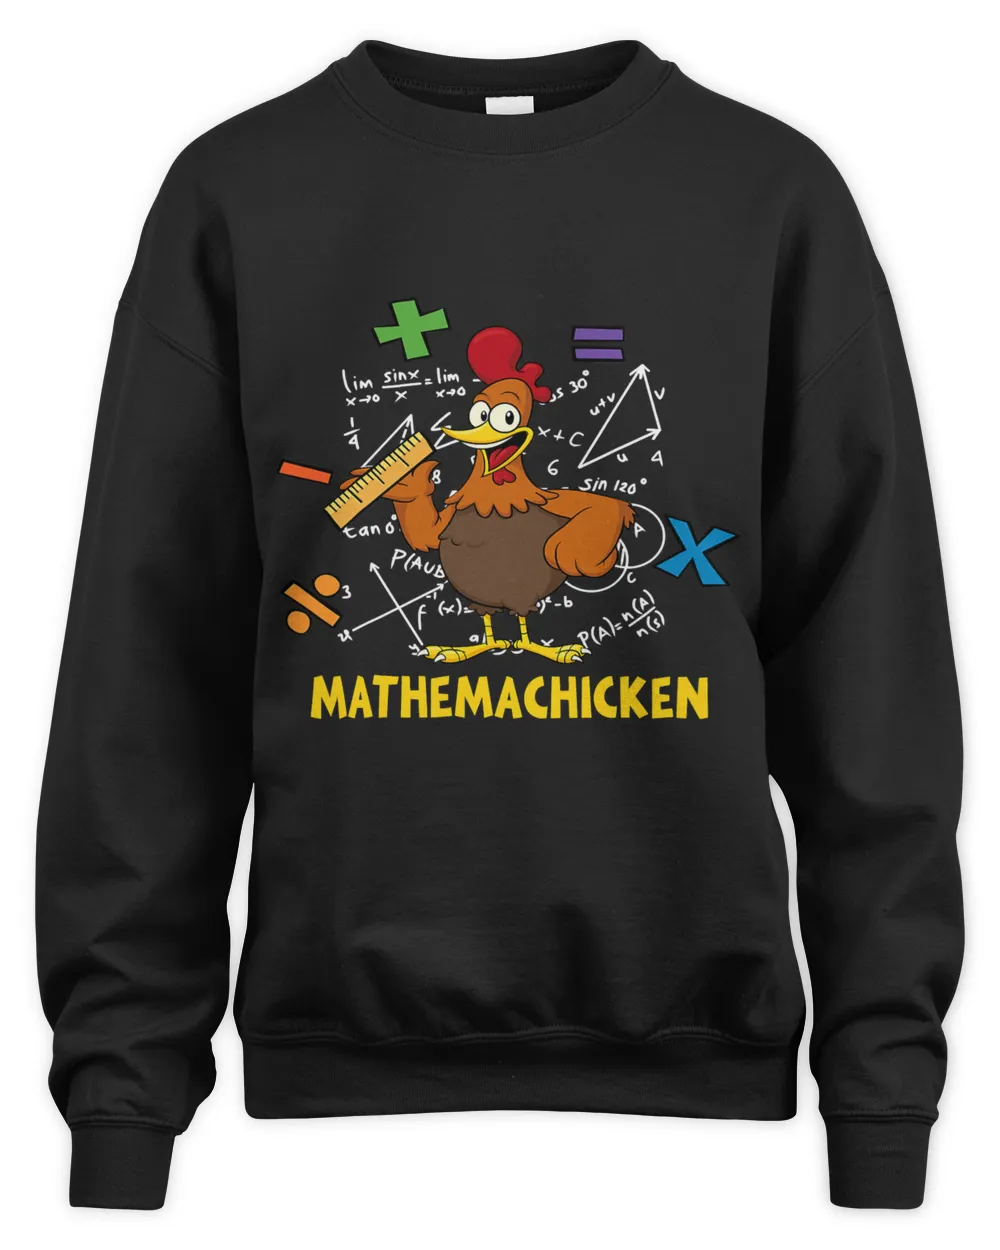 Mathemachicken shirt teacher Math Lovers Funny chicken 82